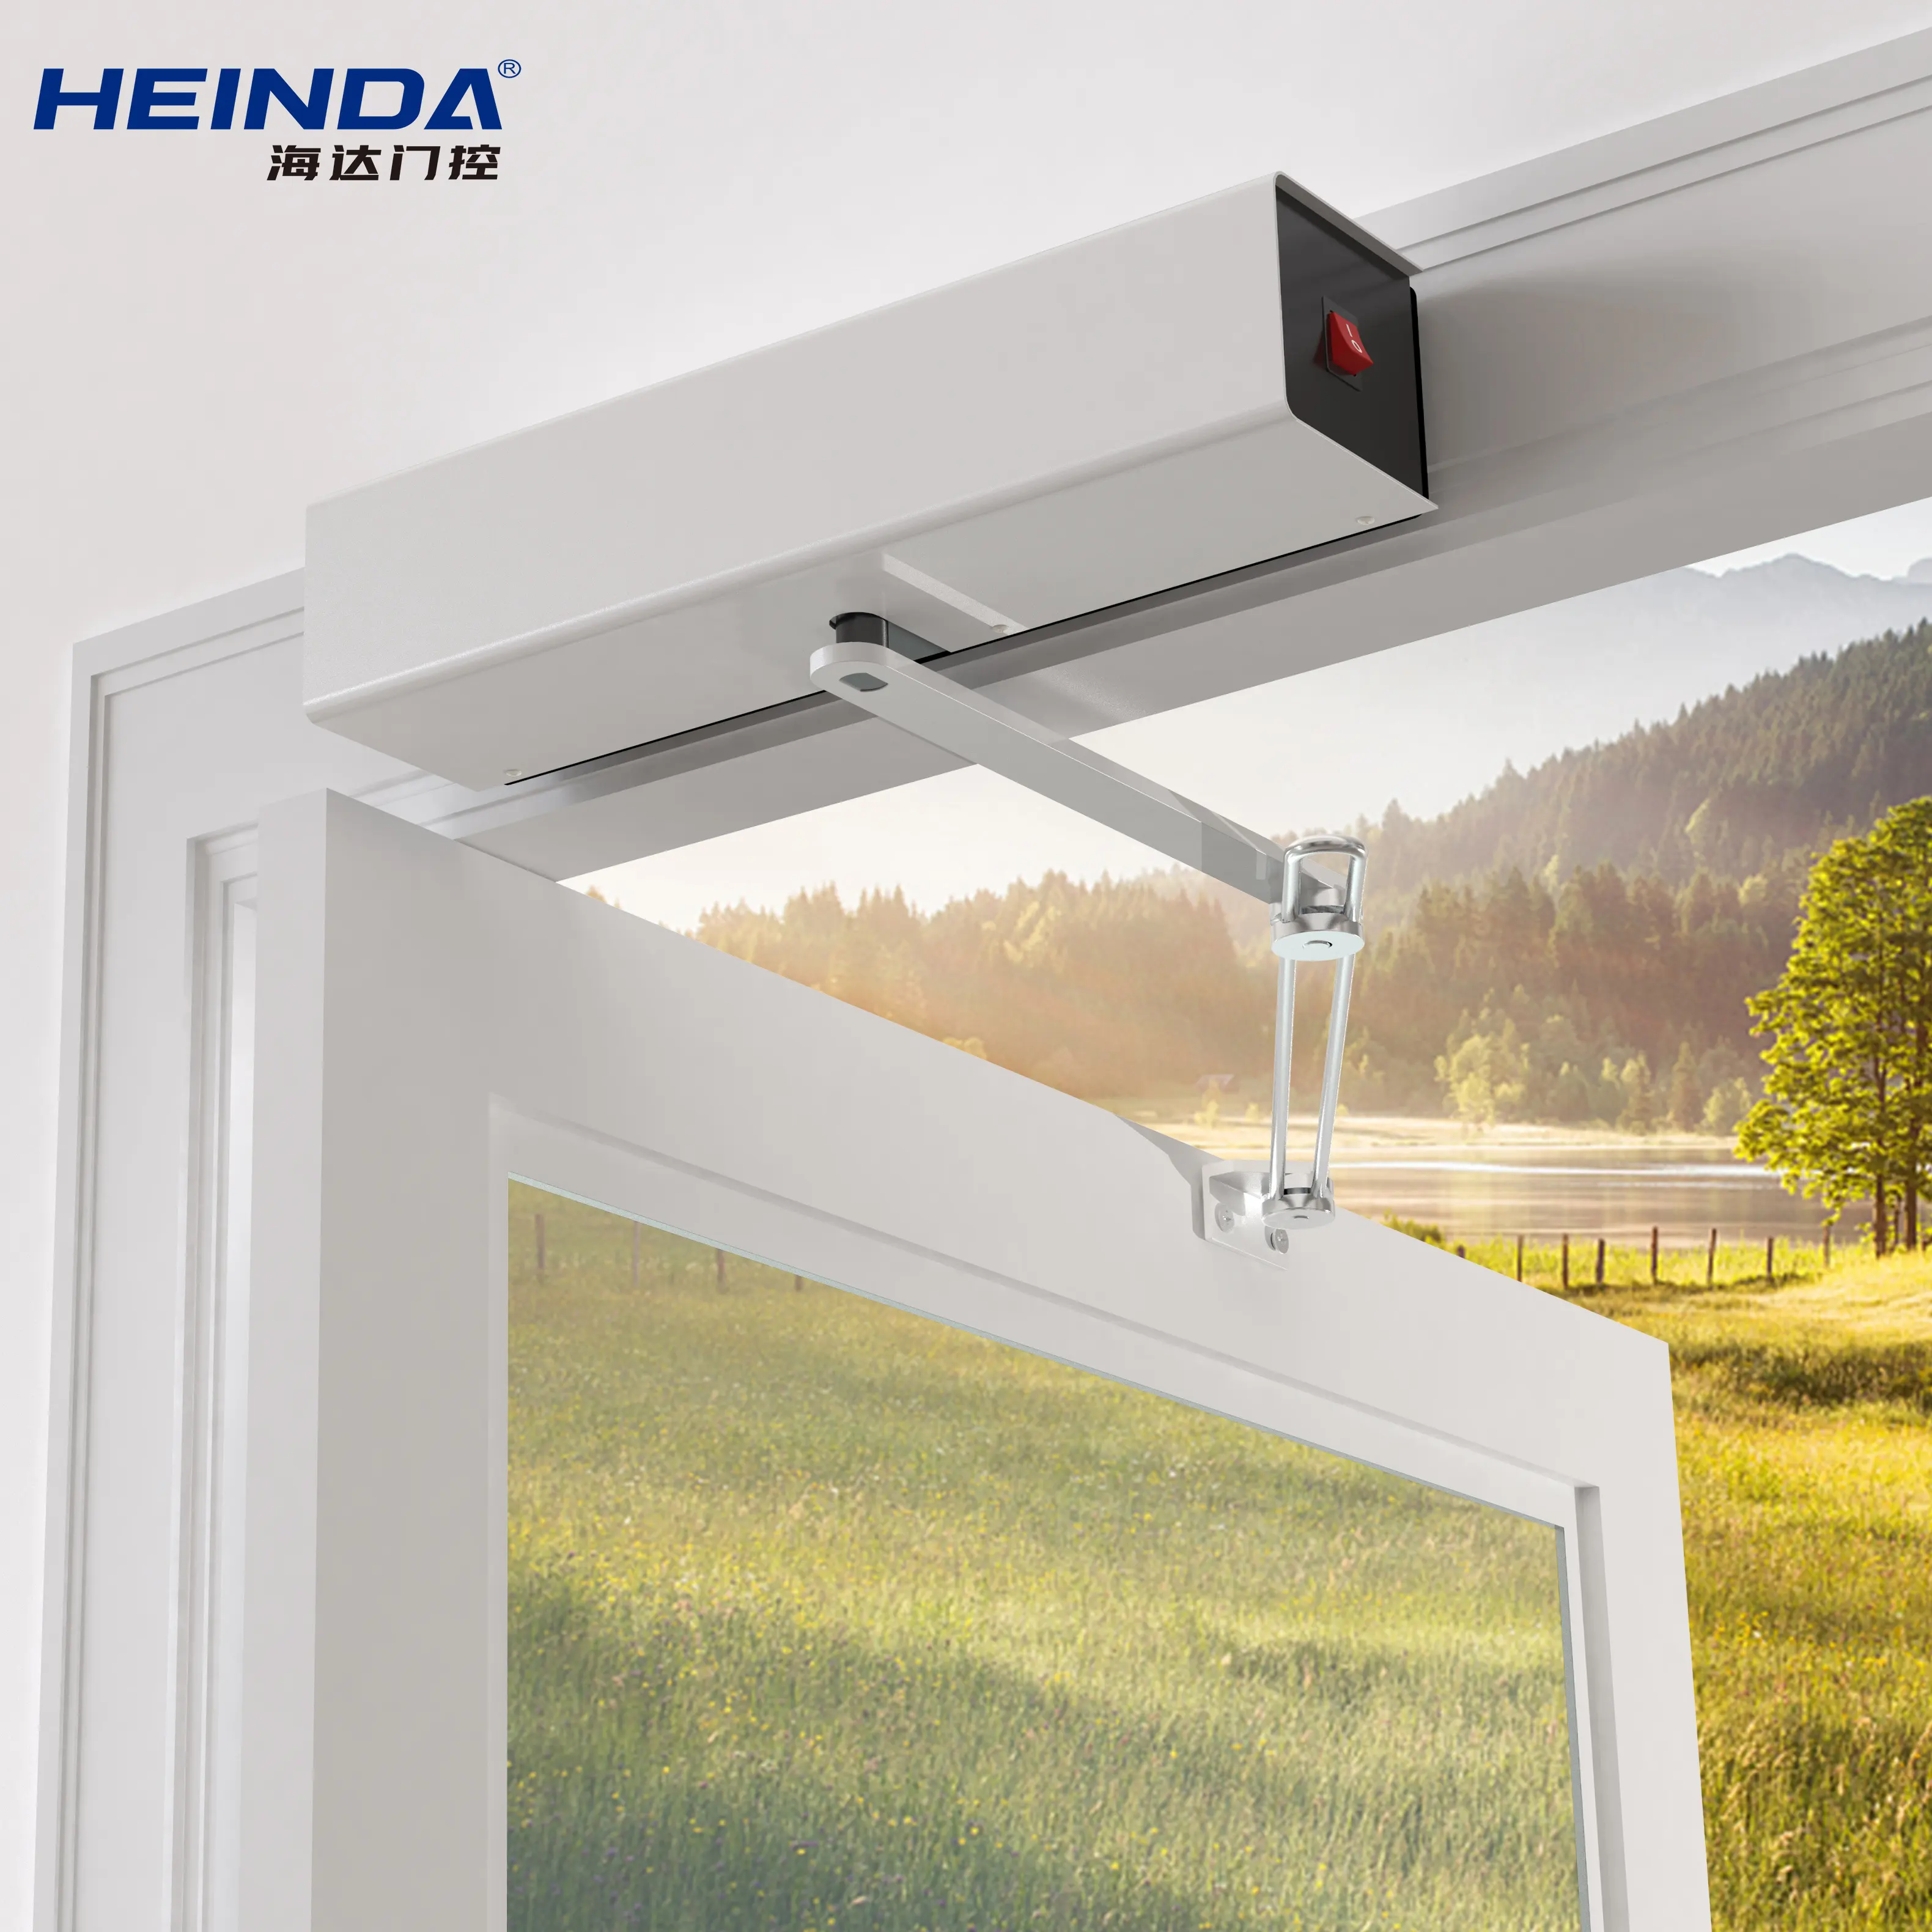 HD-2802 Intelligent Door Control System Electric Door Opener Automatic Swing Door Operator For Disabled